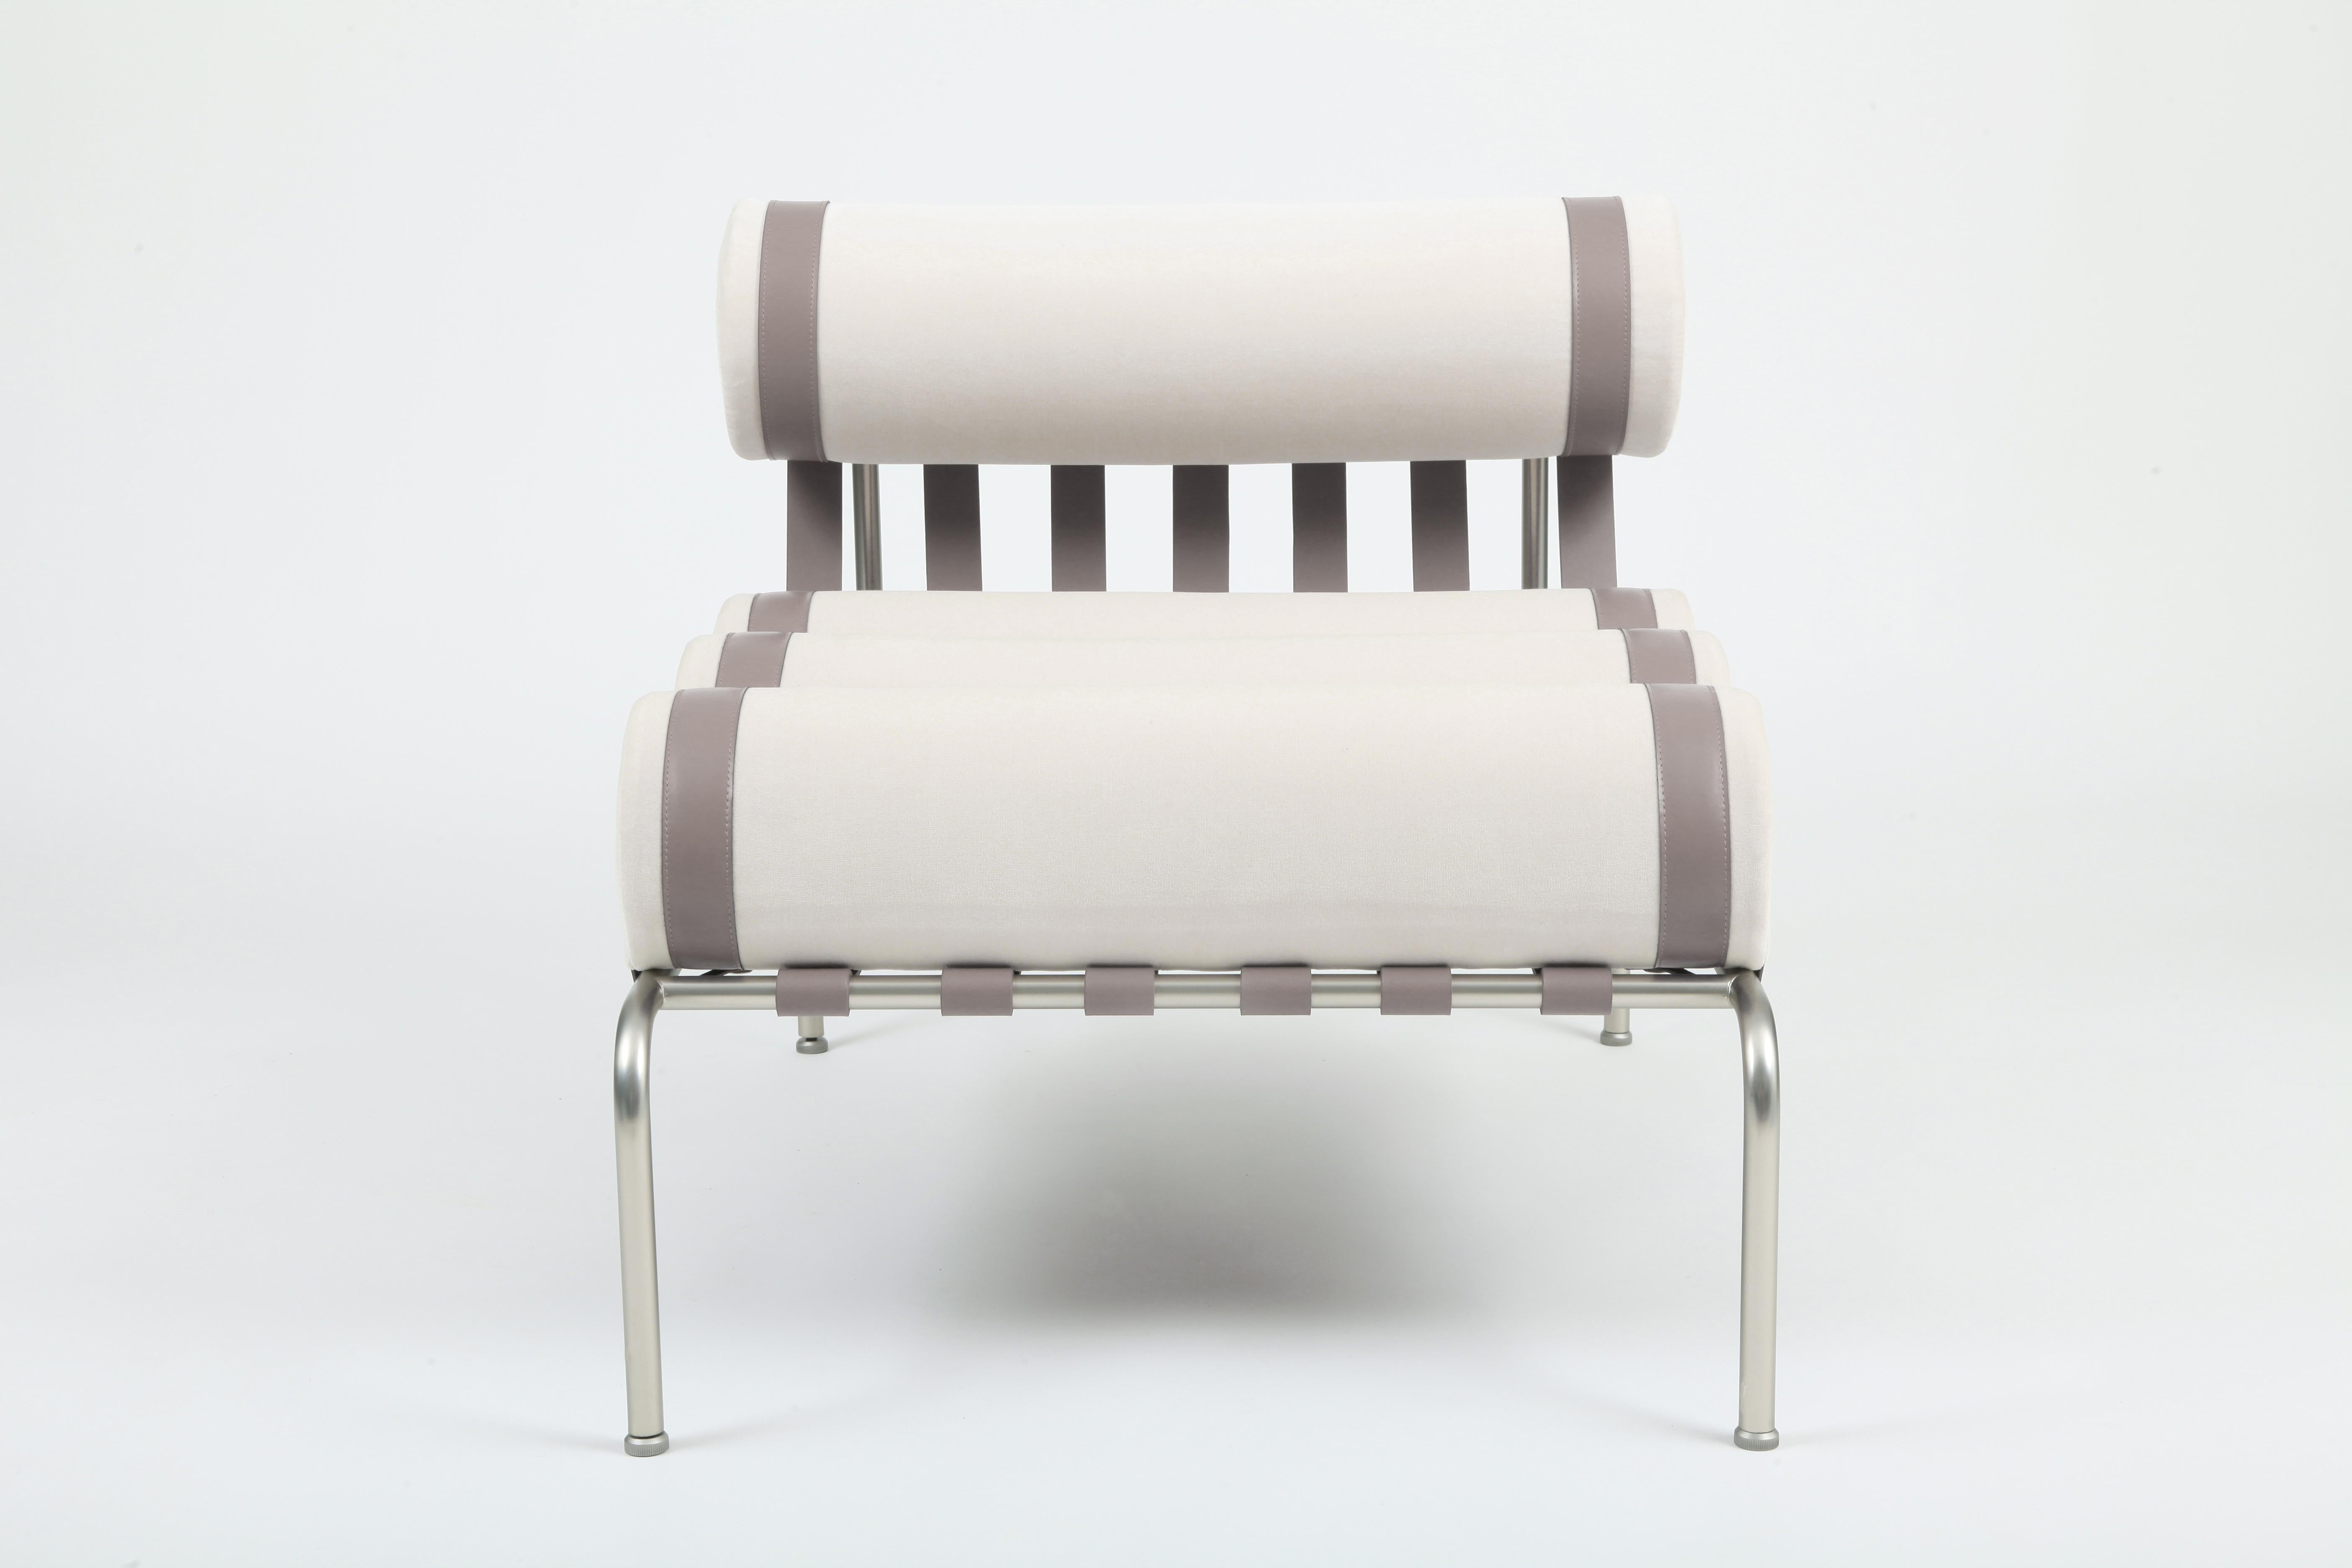 Le fauteuil Kylíndo est un fauteuil d'intérieur. 
Le siège bas crée une ambiance confortable et intime. Les fines bandes de cuir sont le résultat d'un processus manuel qui allie esthétique et soutien aux coussins du fauteuil Kylindo. Des détails